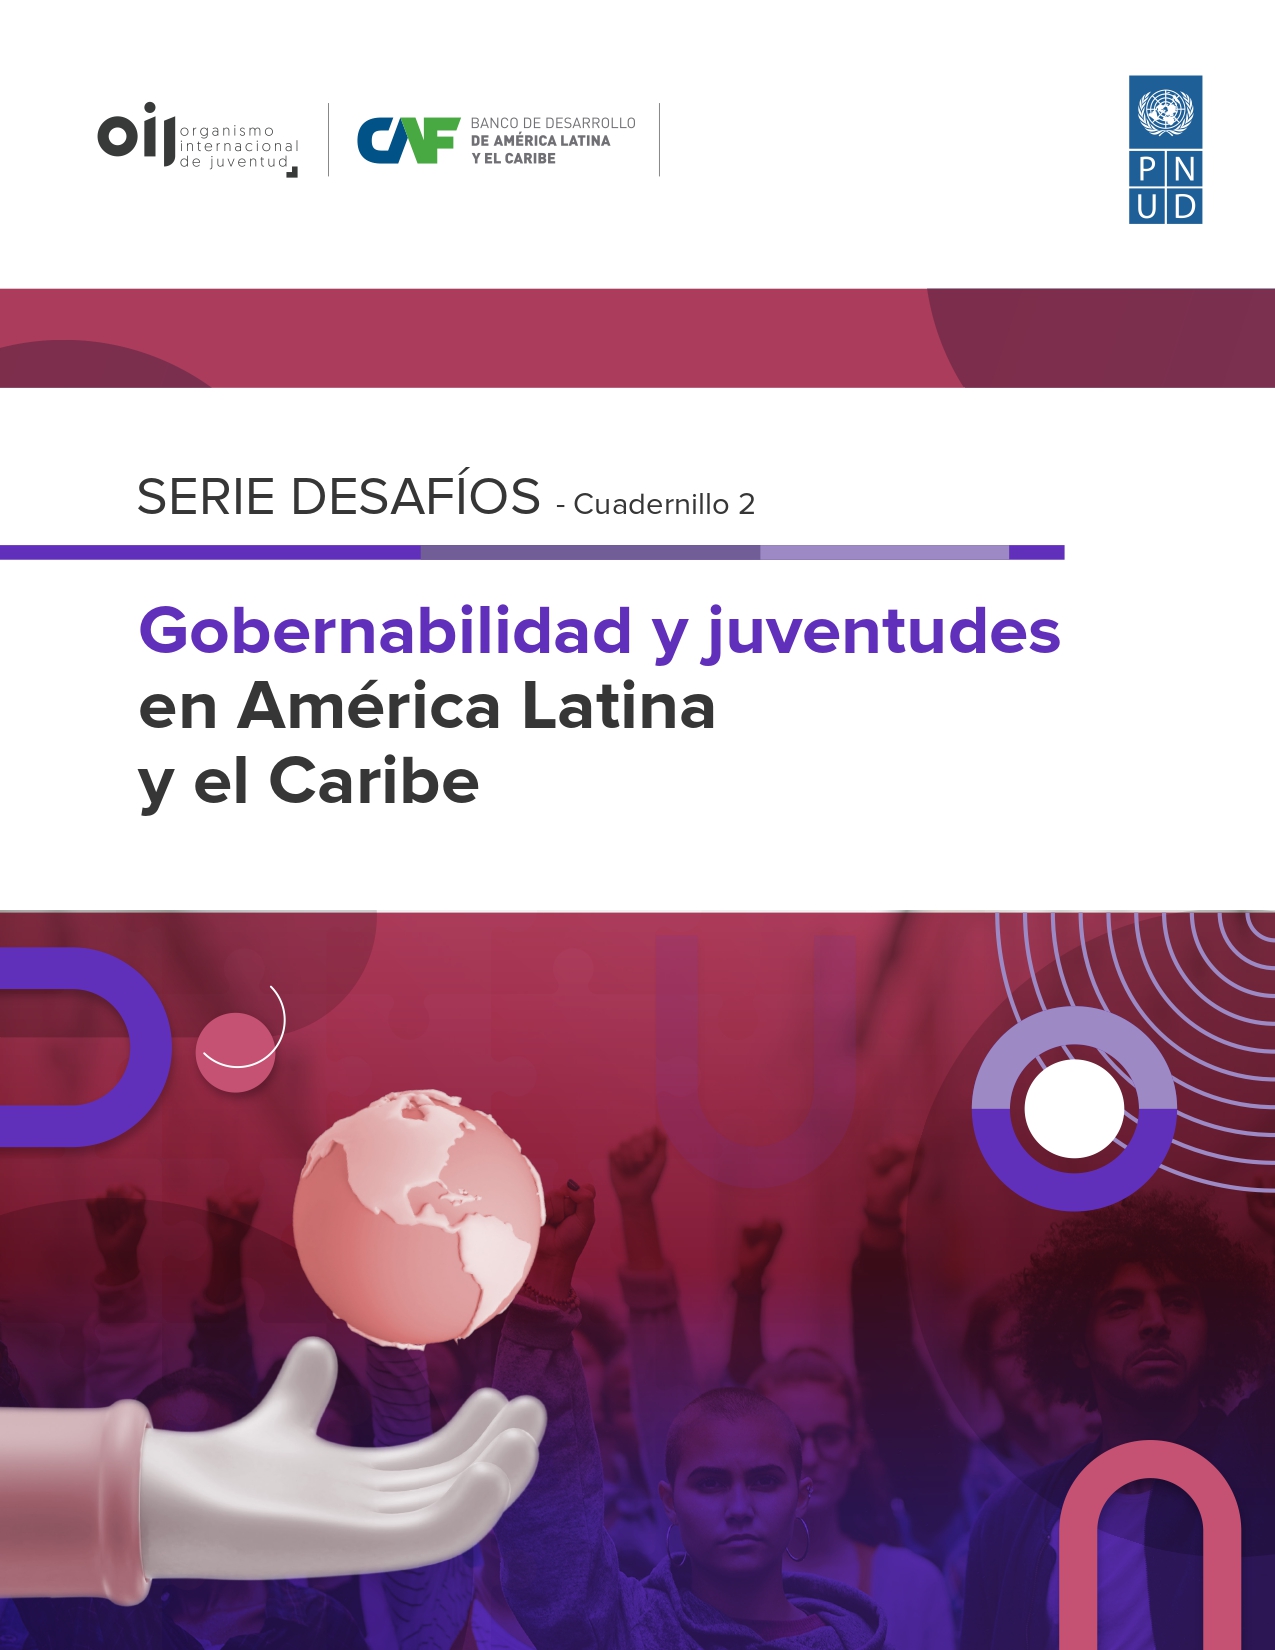 Gobernabilidad y juventudes en América Latina y el Caribe